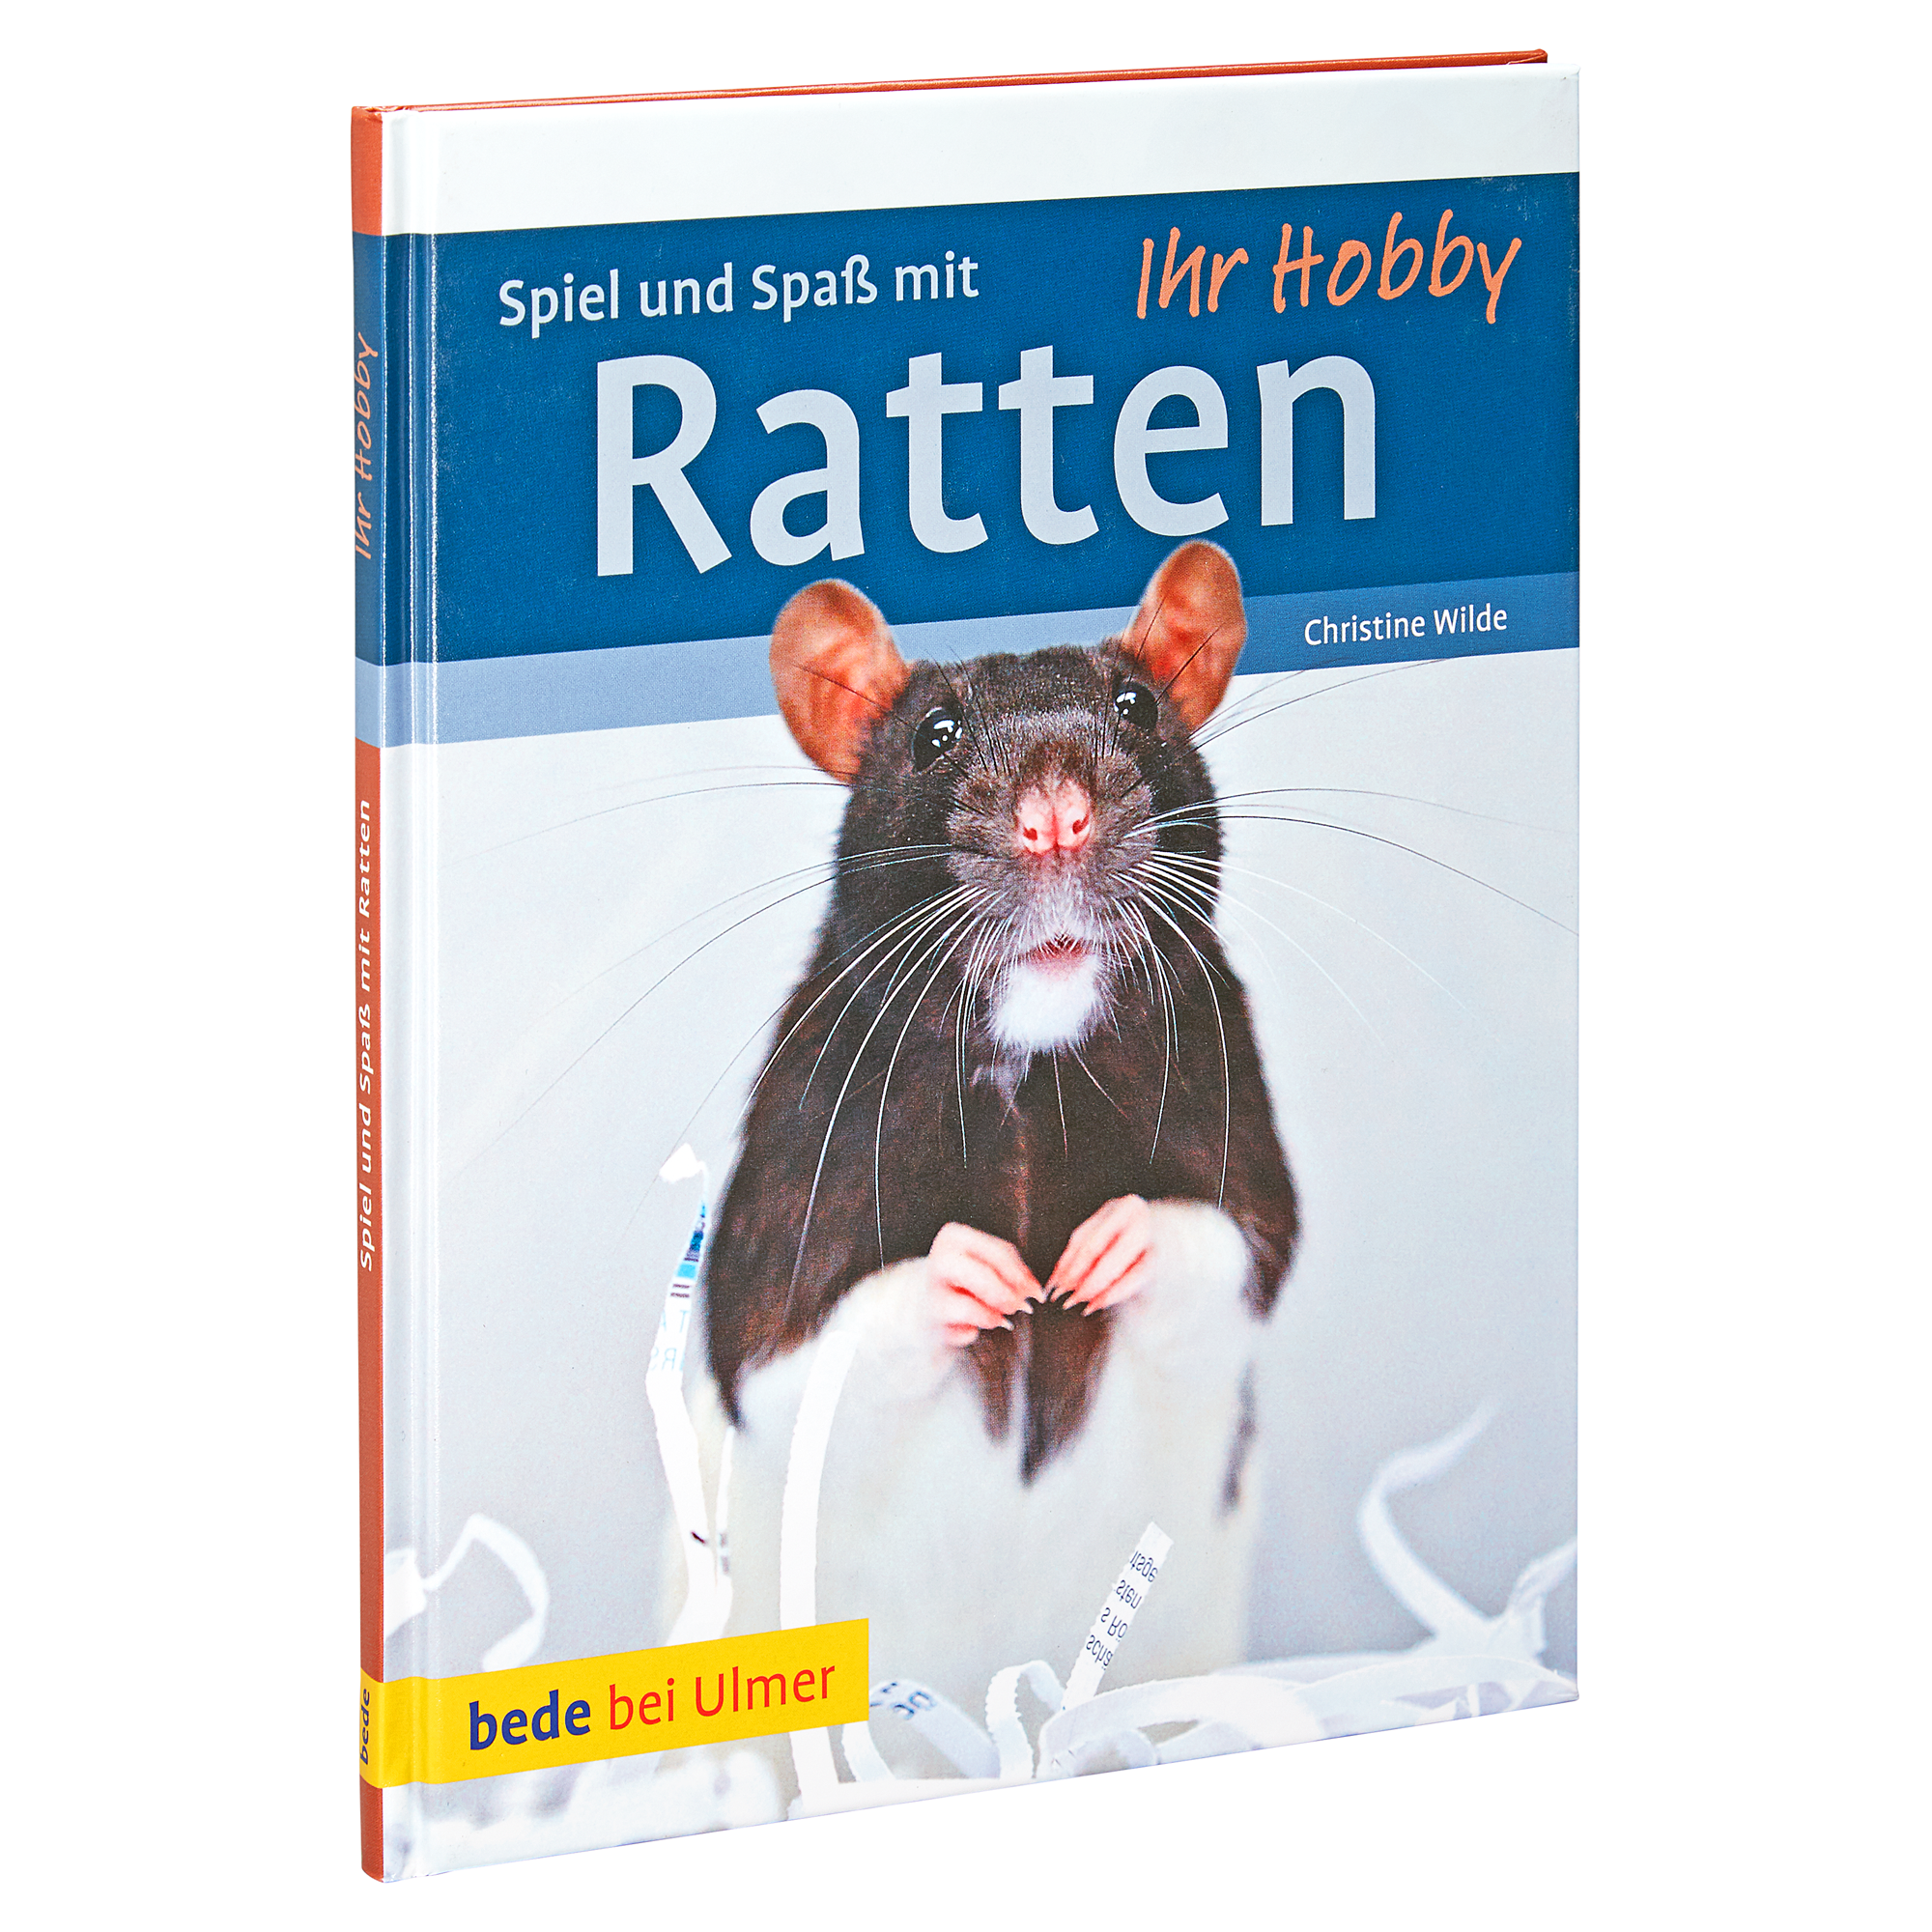 Bede-Tierratgeber "Ihr Hobby: Spiel und Spaß mit Ratten" HC 80 S. + product picture